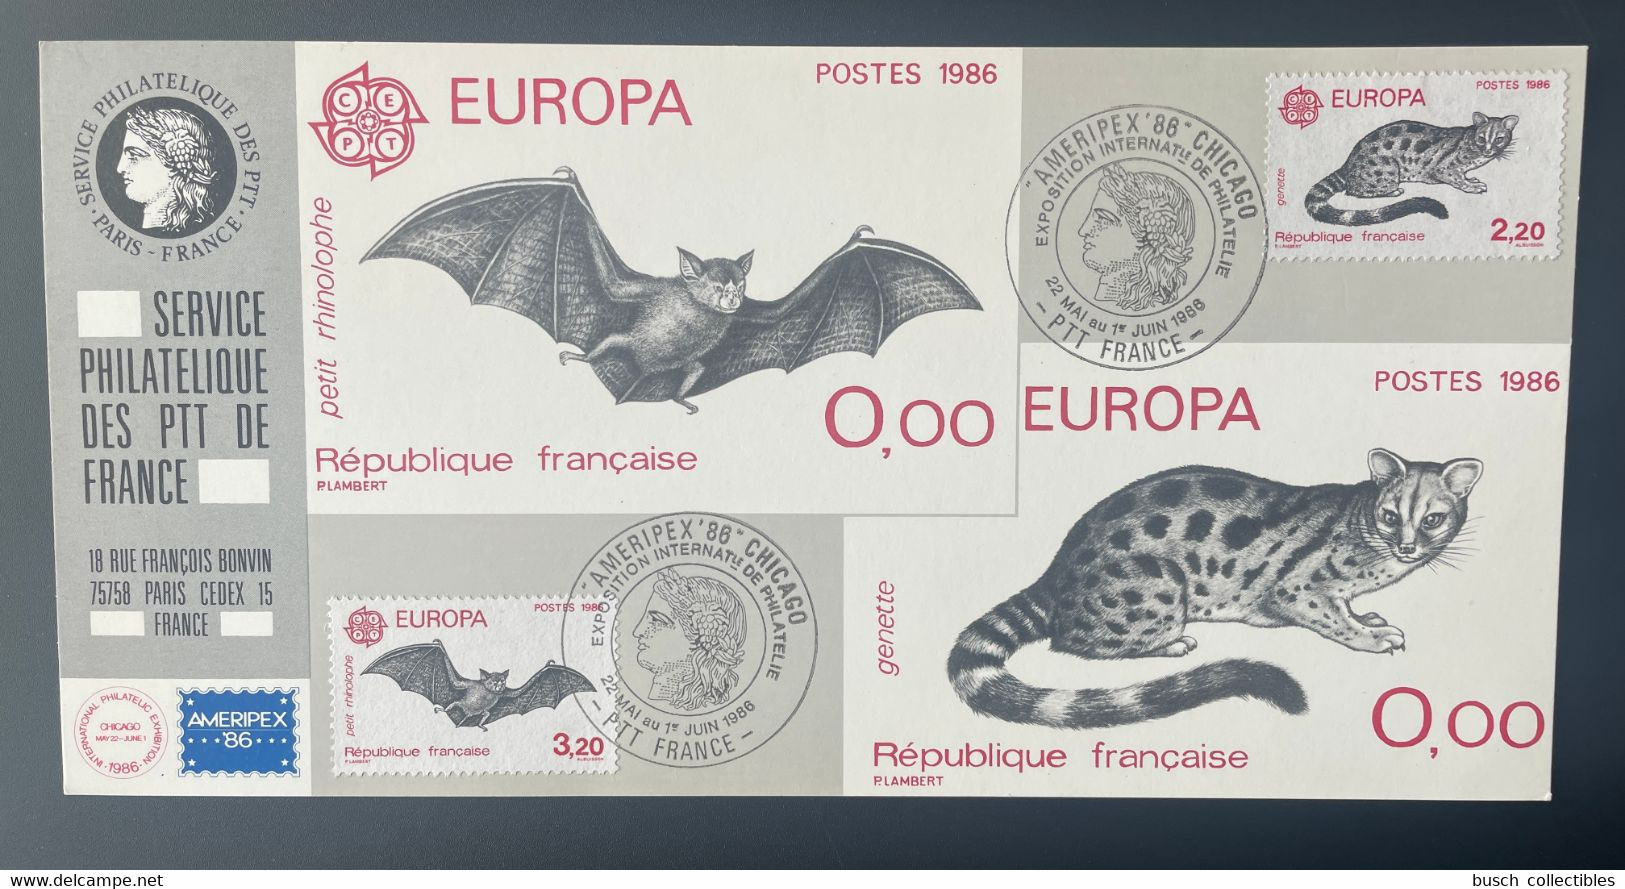 026 Carte Officielle Exposition Internationale Exhibition Chicago 1986 FDC France Europa CEPT Bat Chauve-souris Fauna - Philatelic Exhibitions